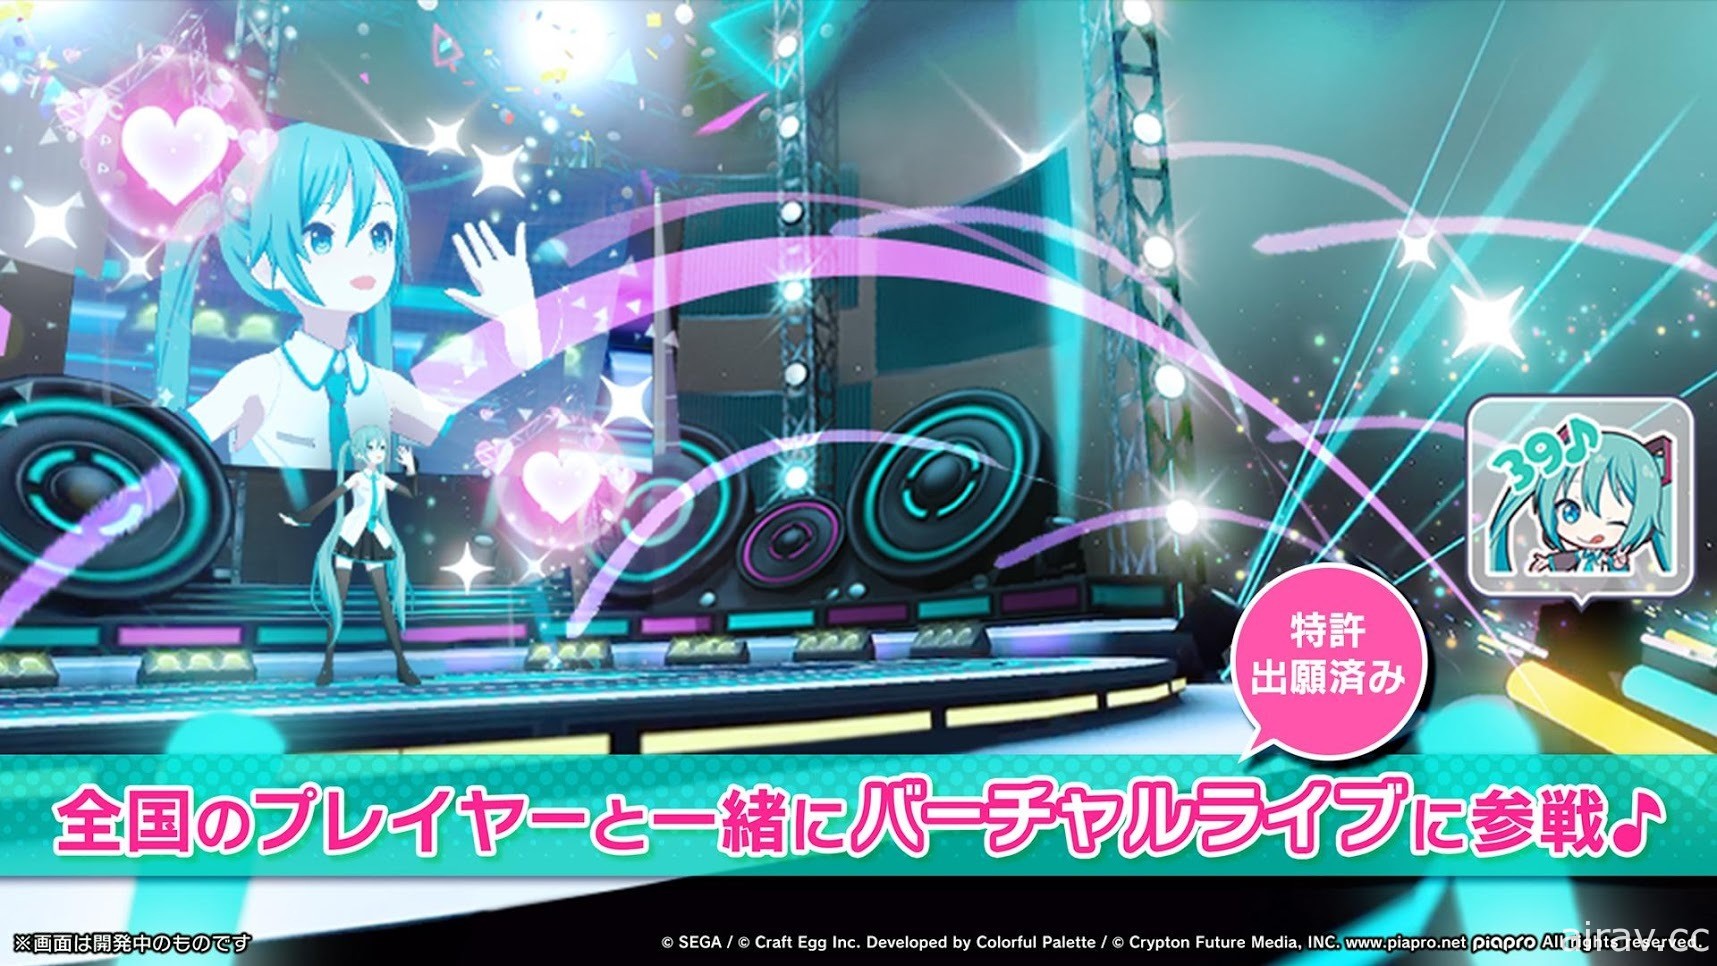 节奏游戏新作《世界计画 彩色舞台 feat. 初音未来》于日本推出 与初音等人一同载歌载舞